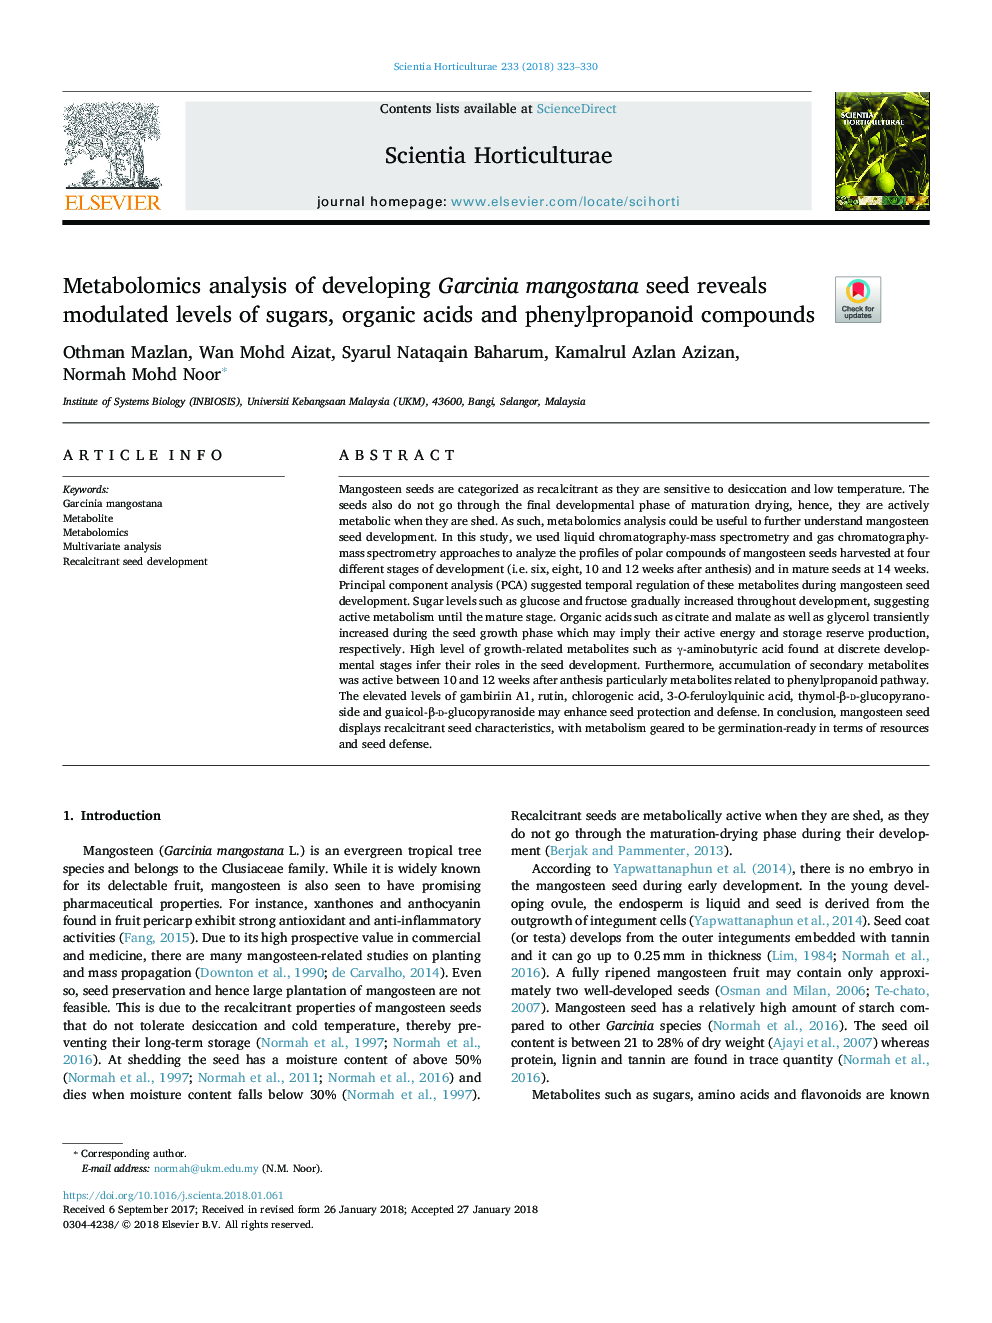 تجزیه و تحلیل متابولومیک در حال رشد دانه گارسینیا مانگوستانا نشان می دهد سطح مدولاسیون قندهای، اسیدهای ارگانیکی و ترکیبات فنیل 